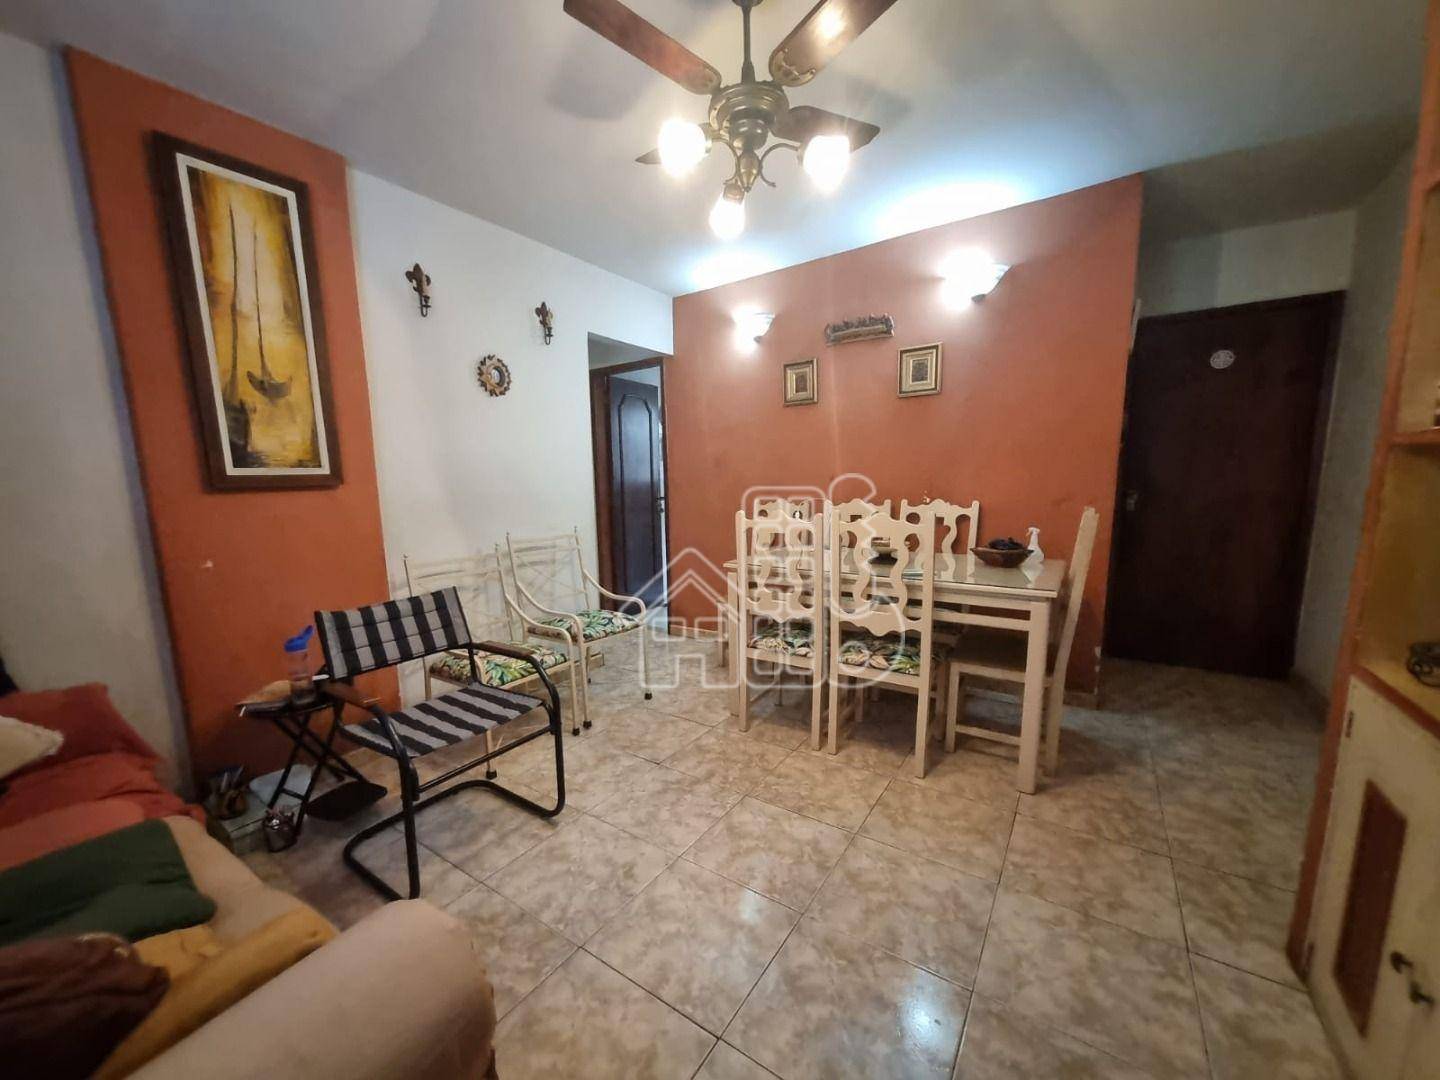 Apartamento com 2 dormitórios à venda, 80 m² por R$ 410.000,01 - Icaraí - Niterói/RJ